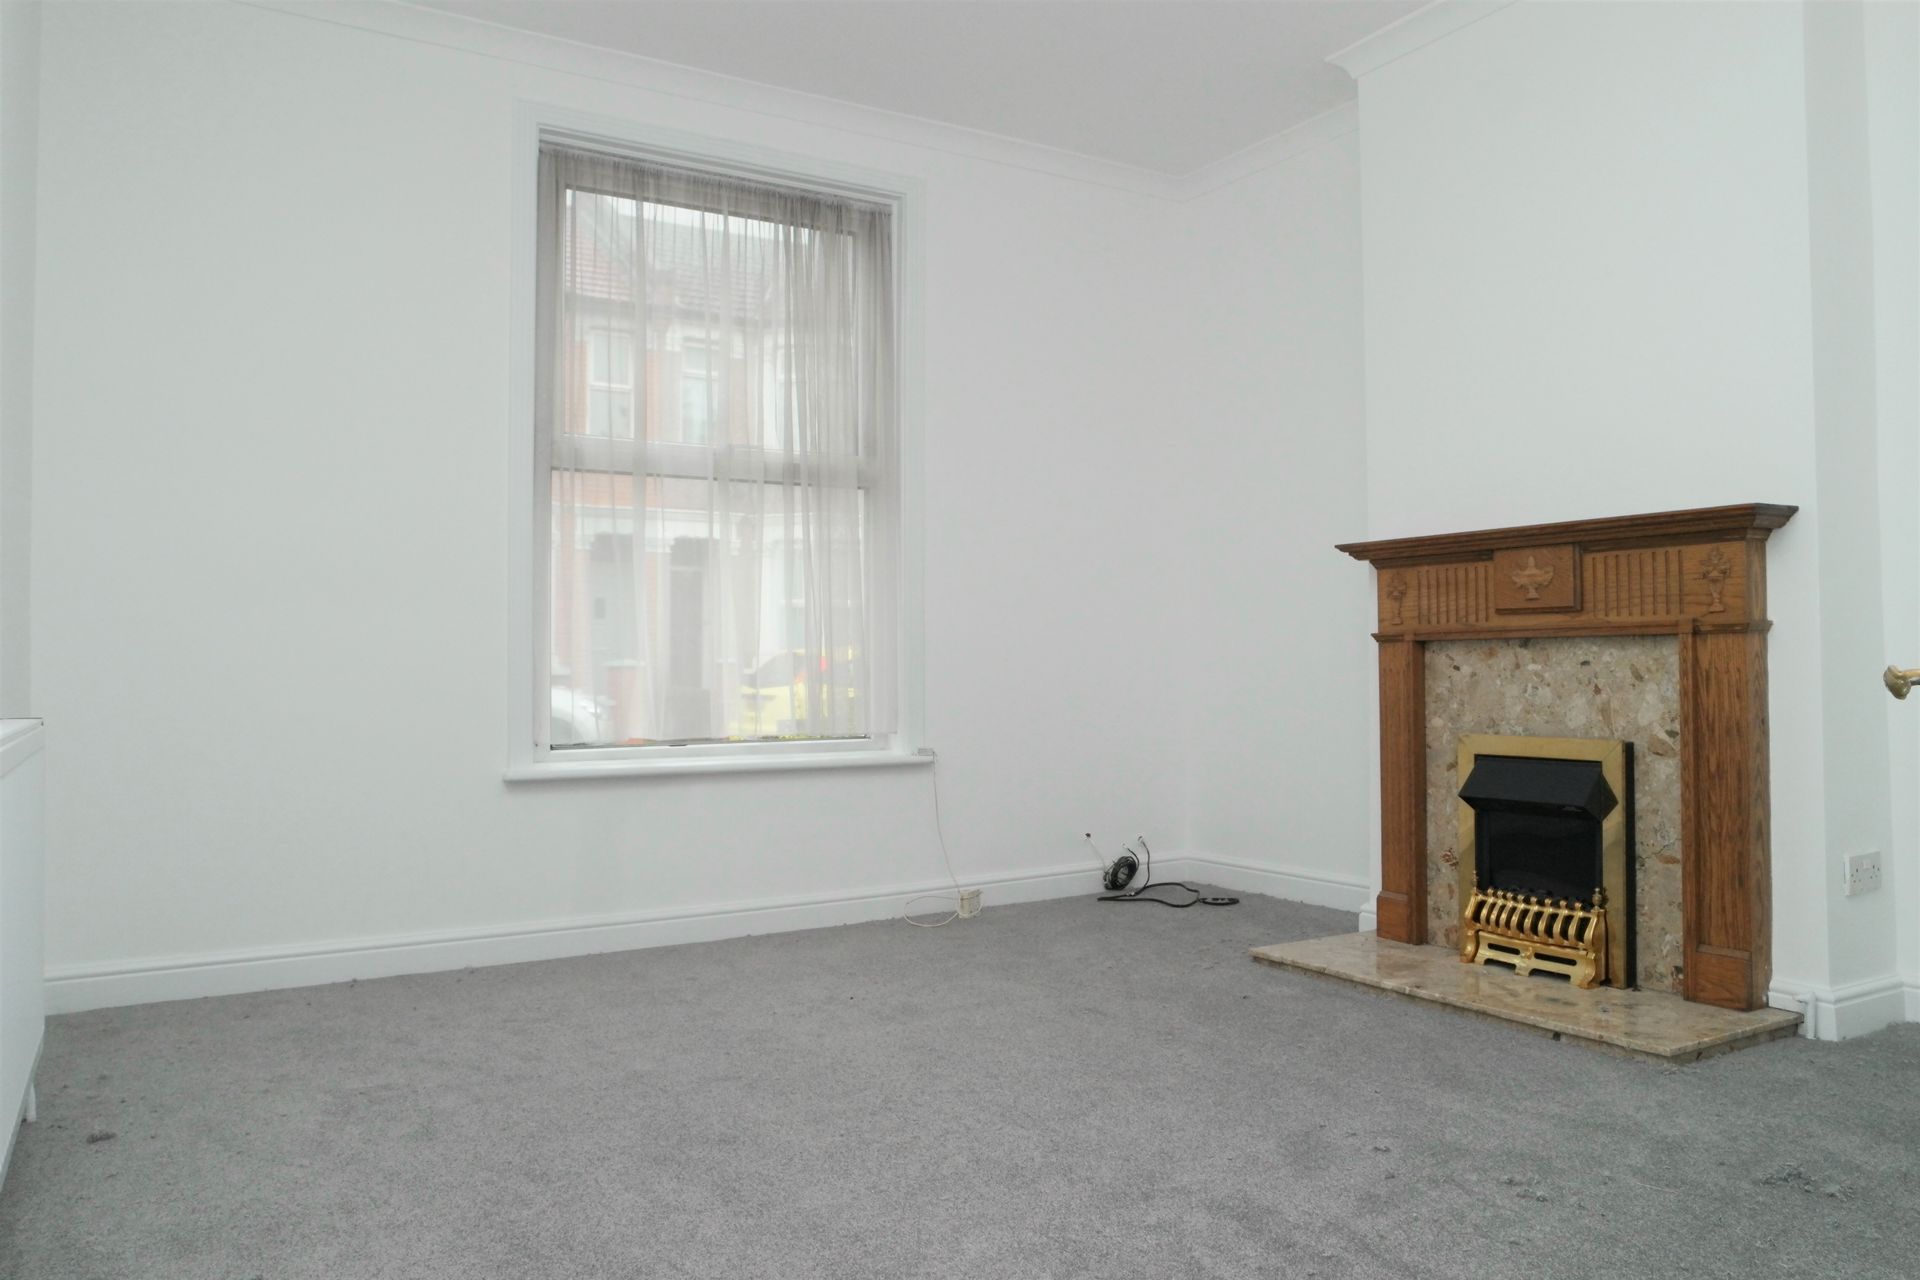 Property To Rent Woolwich Road Bexleyheath Da7 3 Bedroom